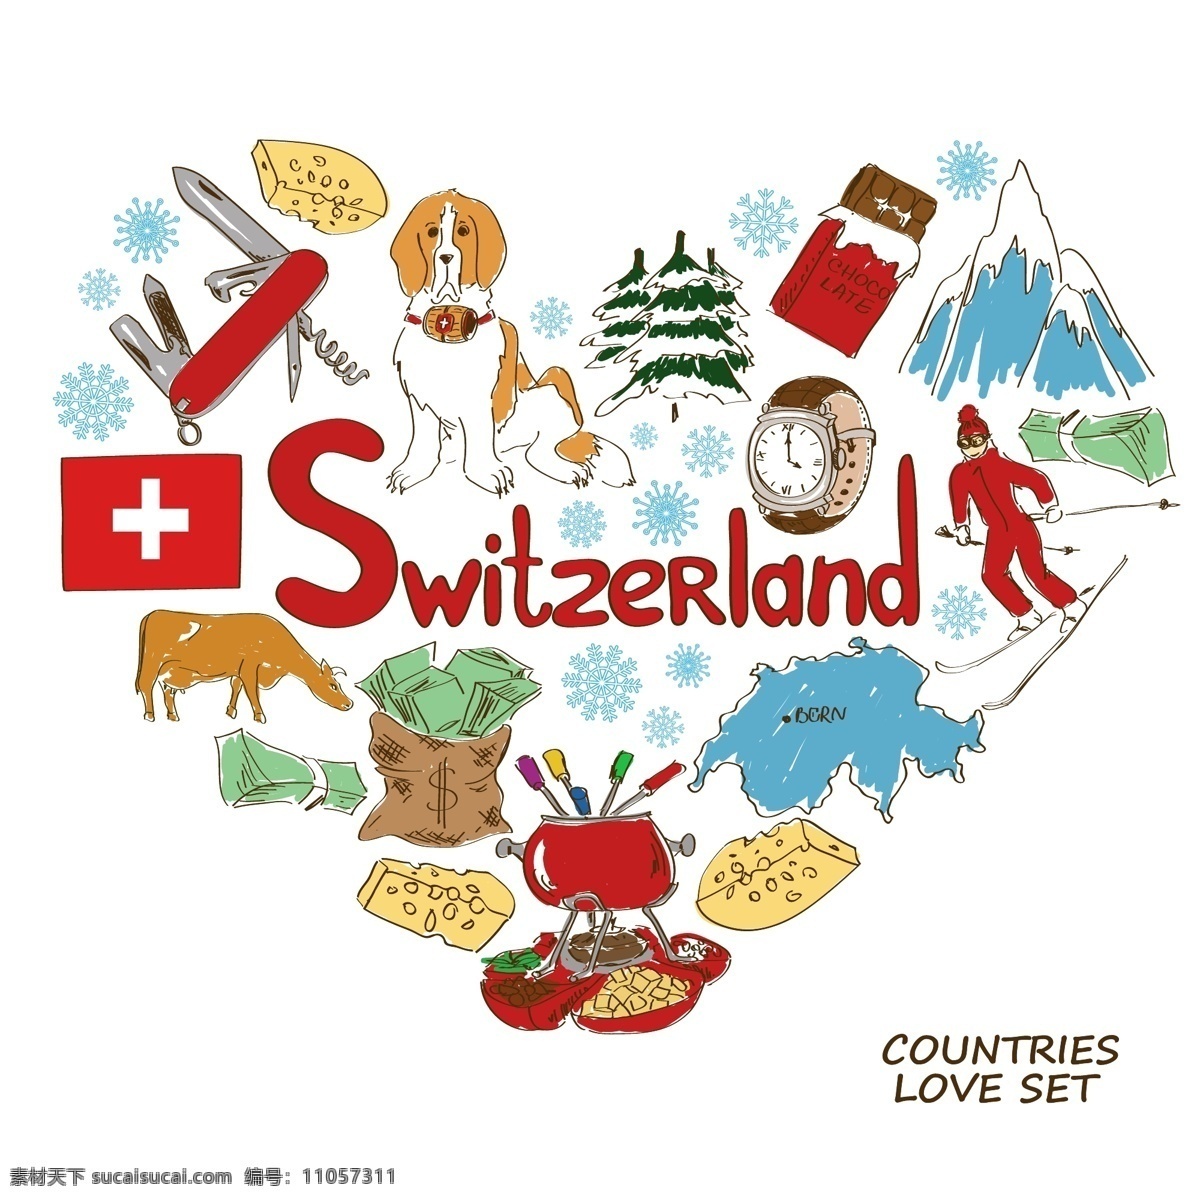 瑞士国家元素 瑞士 国家元素 国家象征 国家图标 手绘 矢量 设计素材库 文化艺术 绘画书法